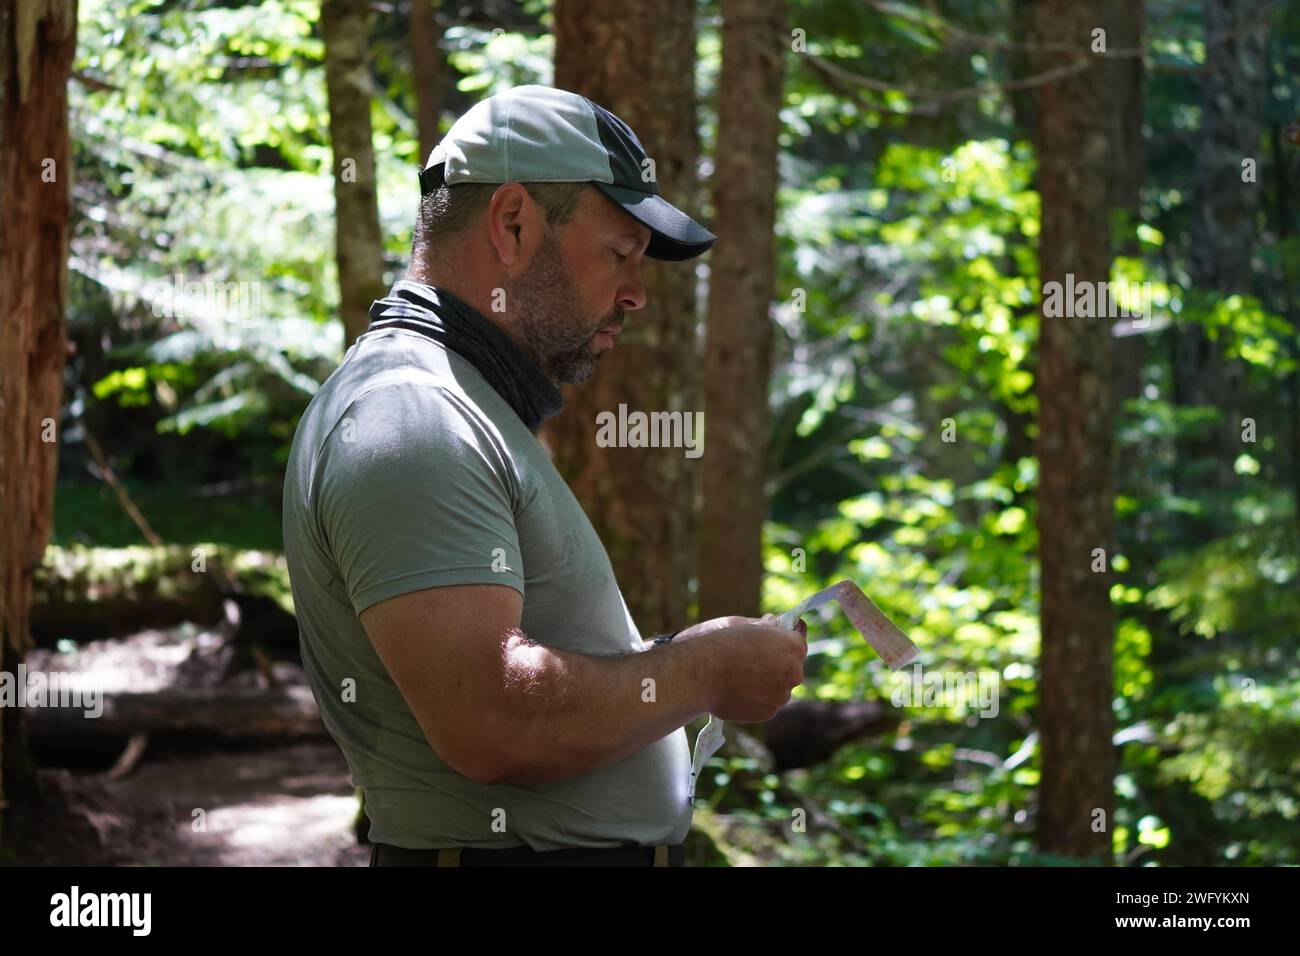 Seitenansicht eines Mannes im Alter von 50 Jahren, der seine Wanderkarte gelesen hat, während er auf dem Timberline Trail in Oregon durch einen Wald wandert. Stockfoto